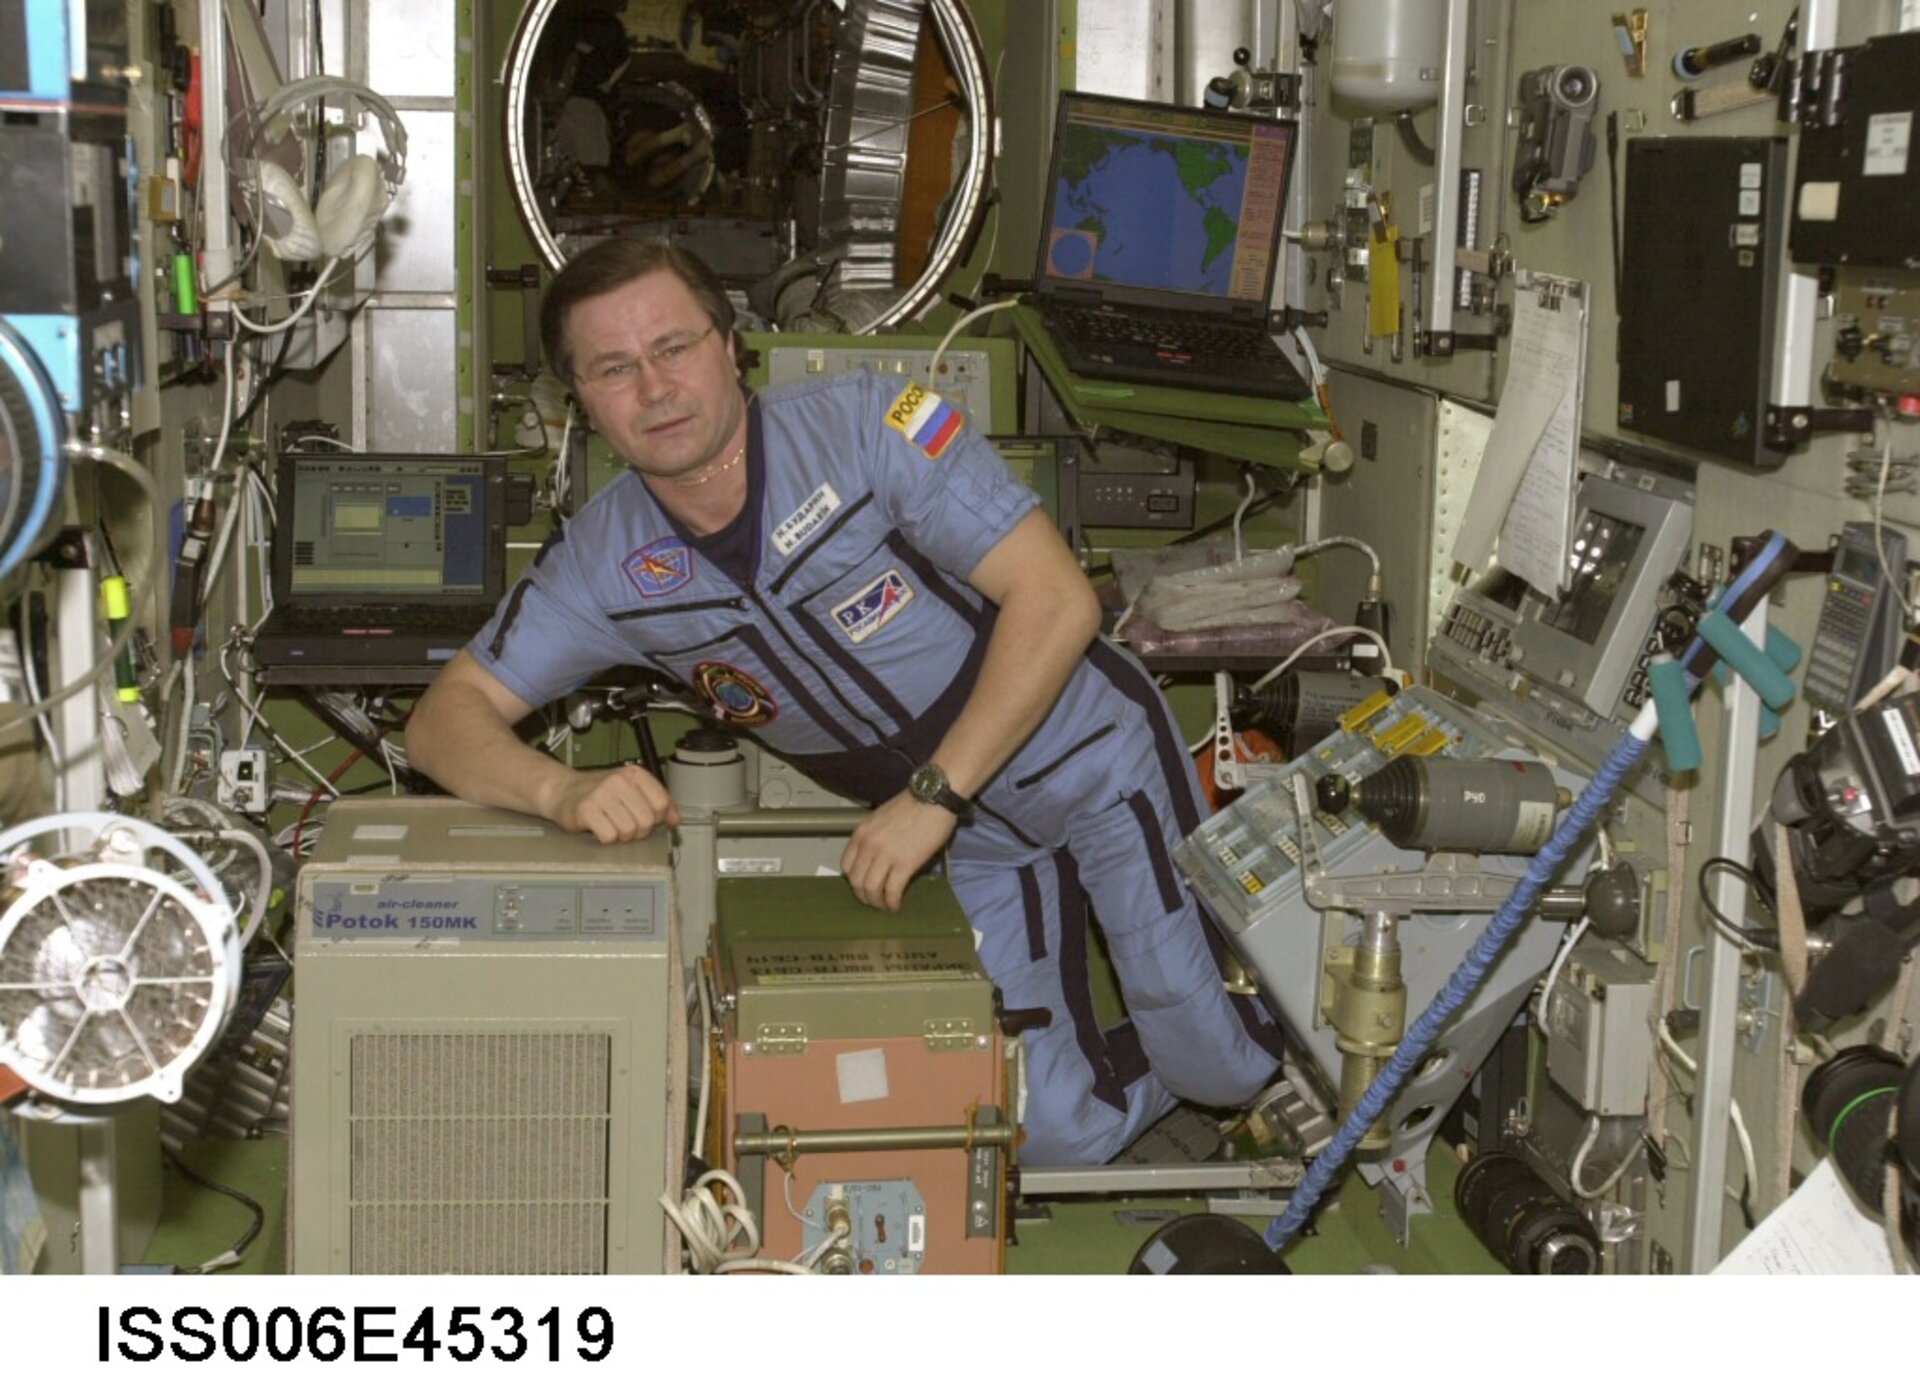 Il cosmonauta Budarin vicino al Potok 150 Mk